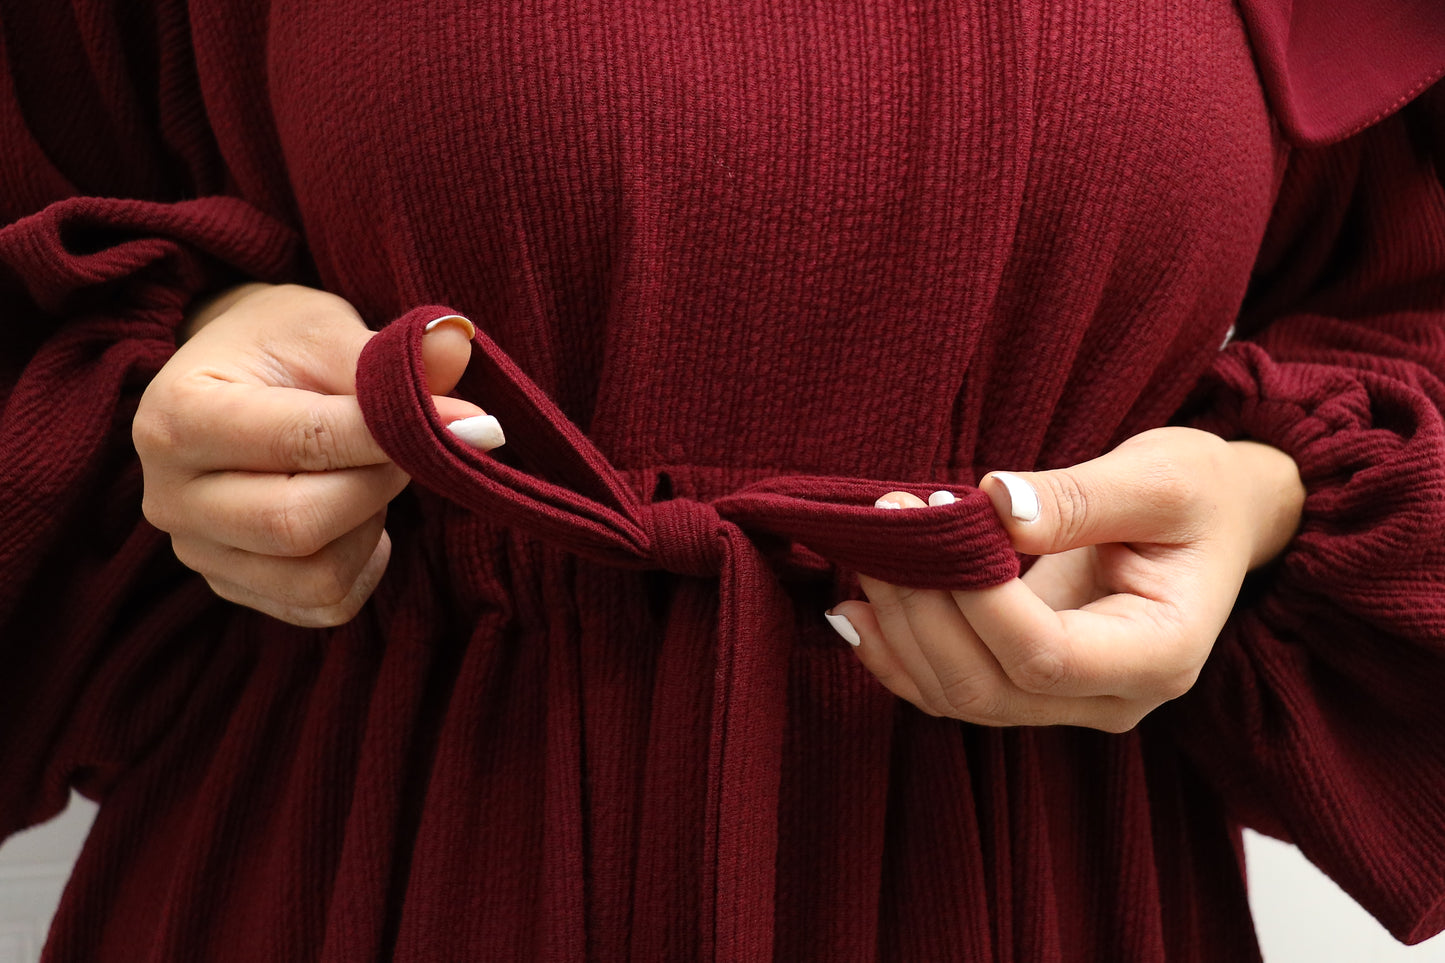 Baria Bubble Sleeve Abaya Jersey knit: Maroon